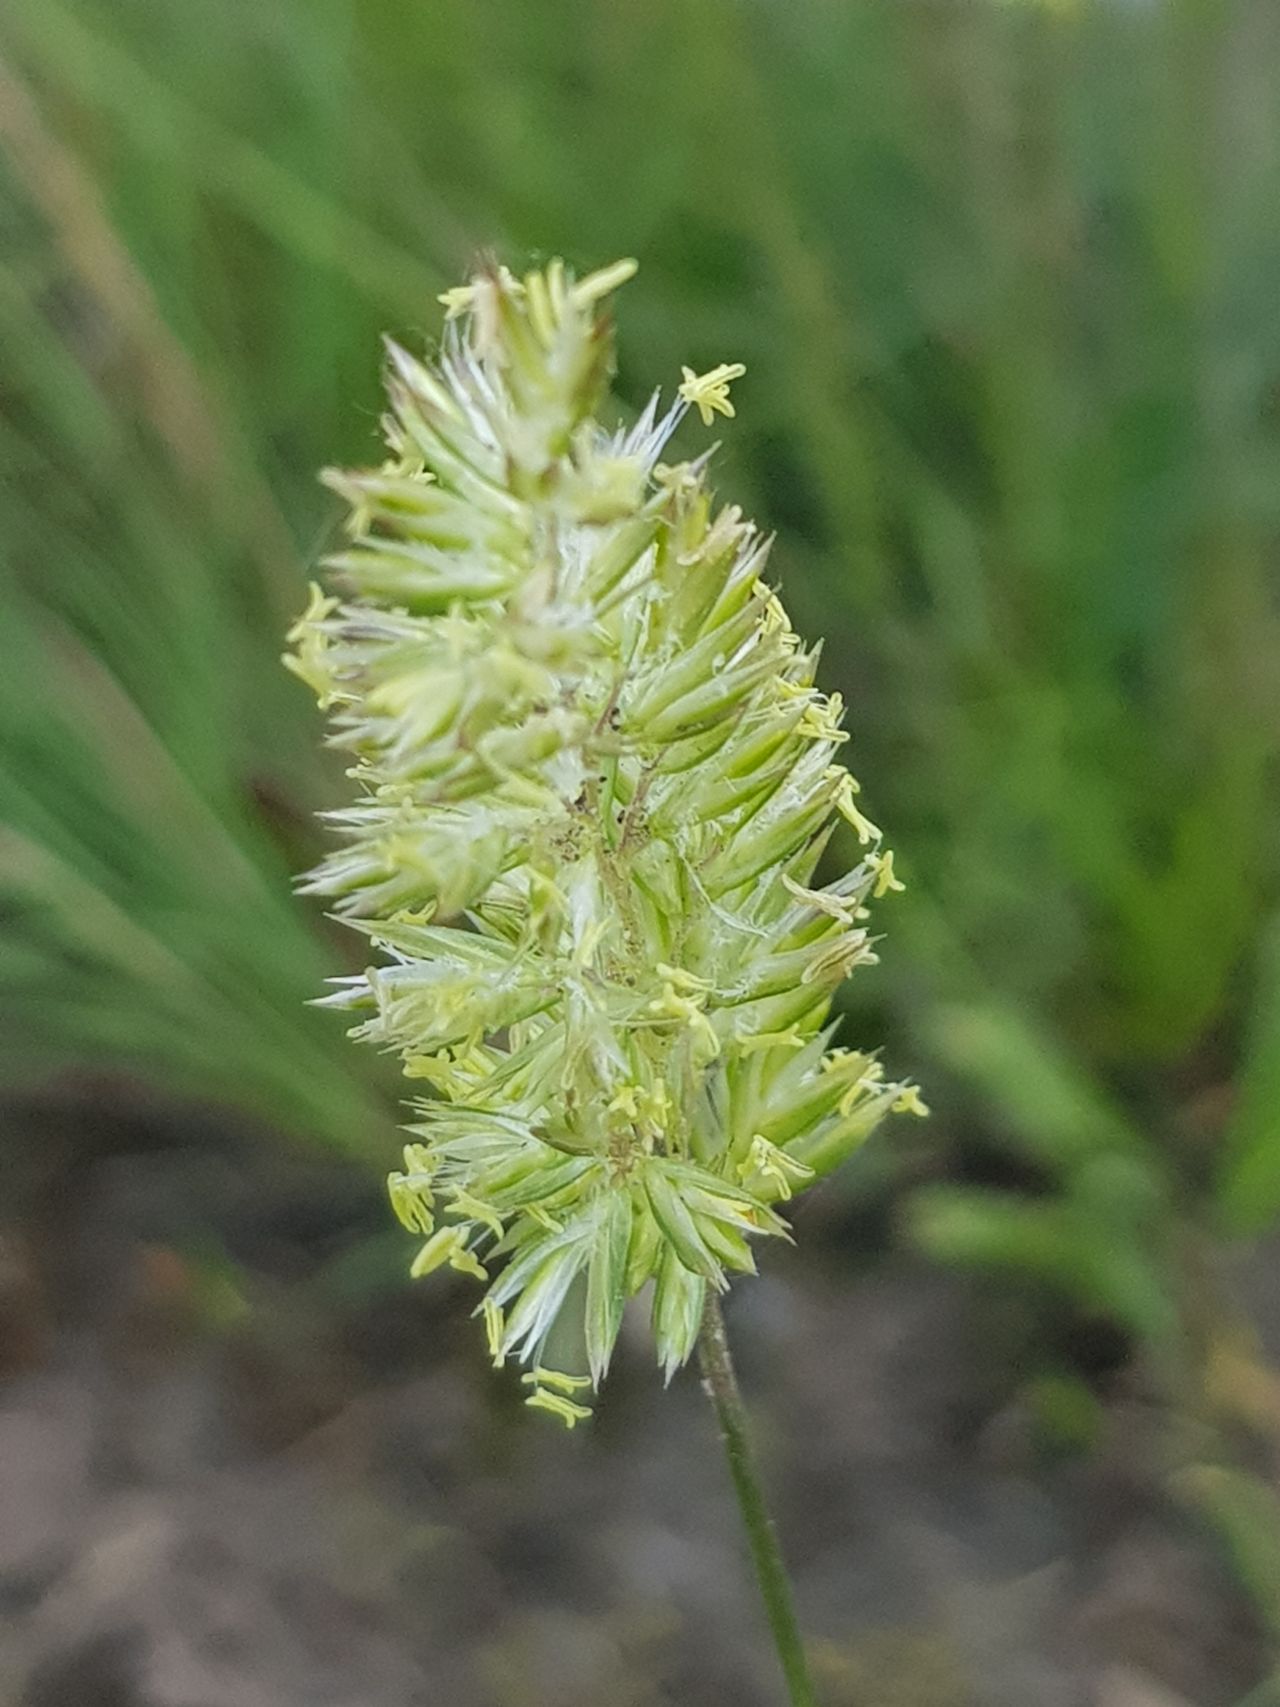 Koeleria albescens